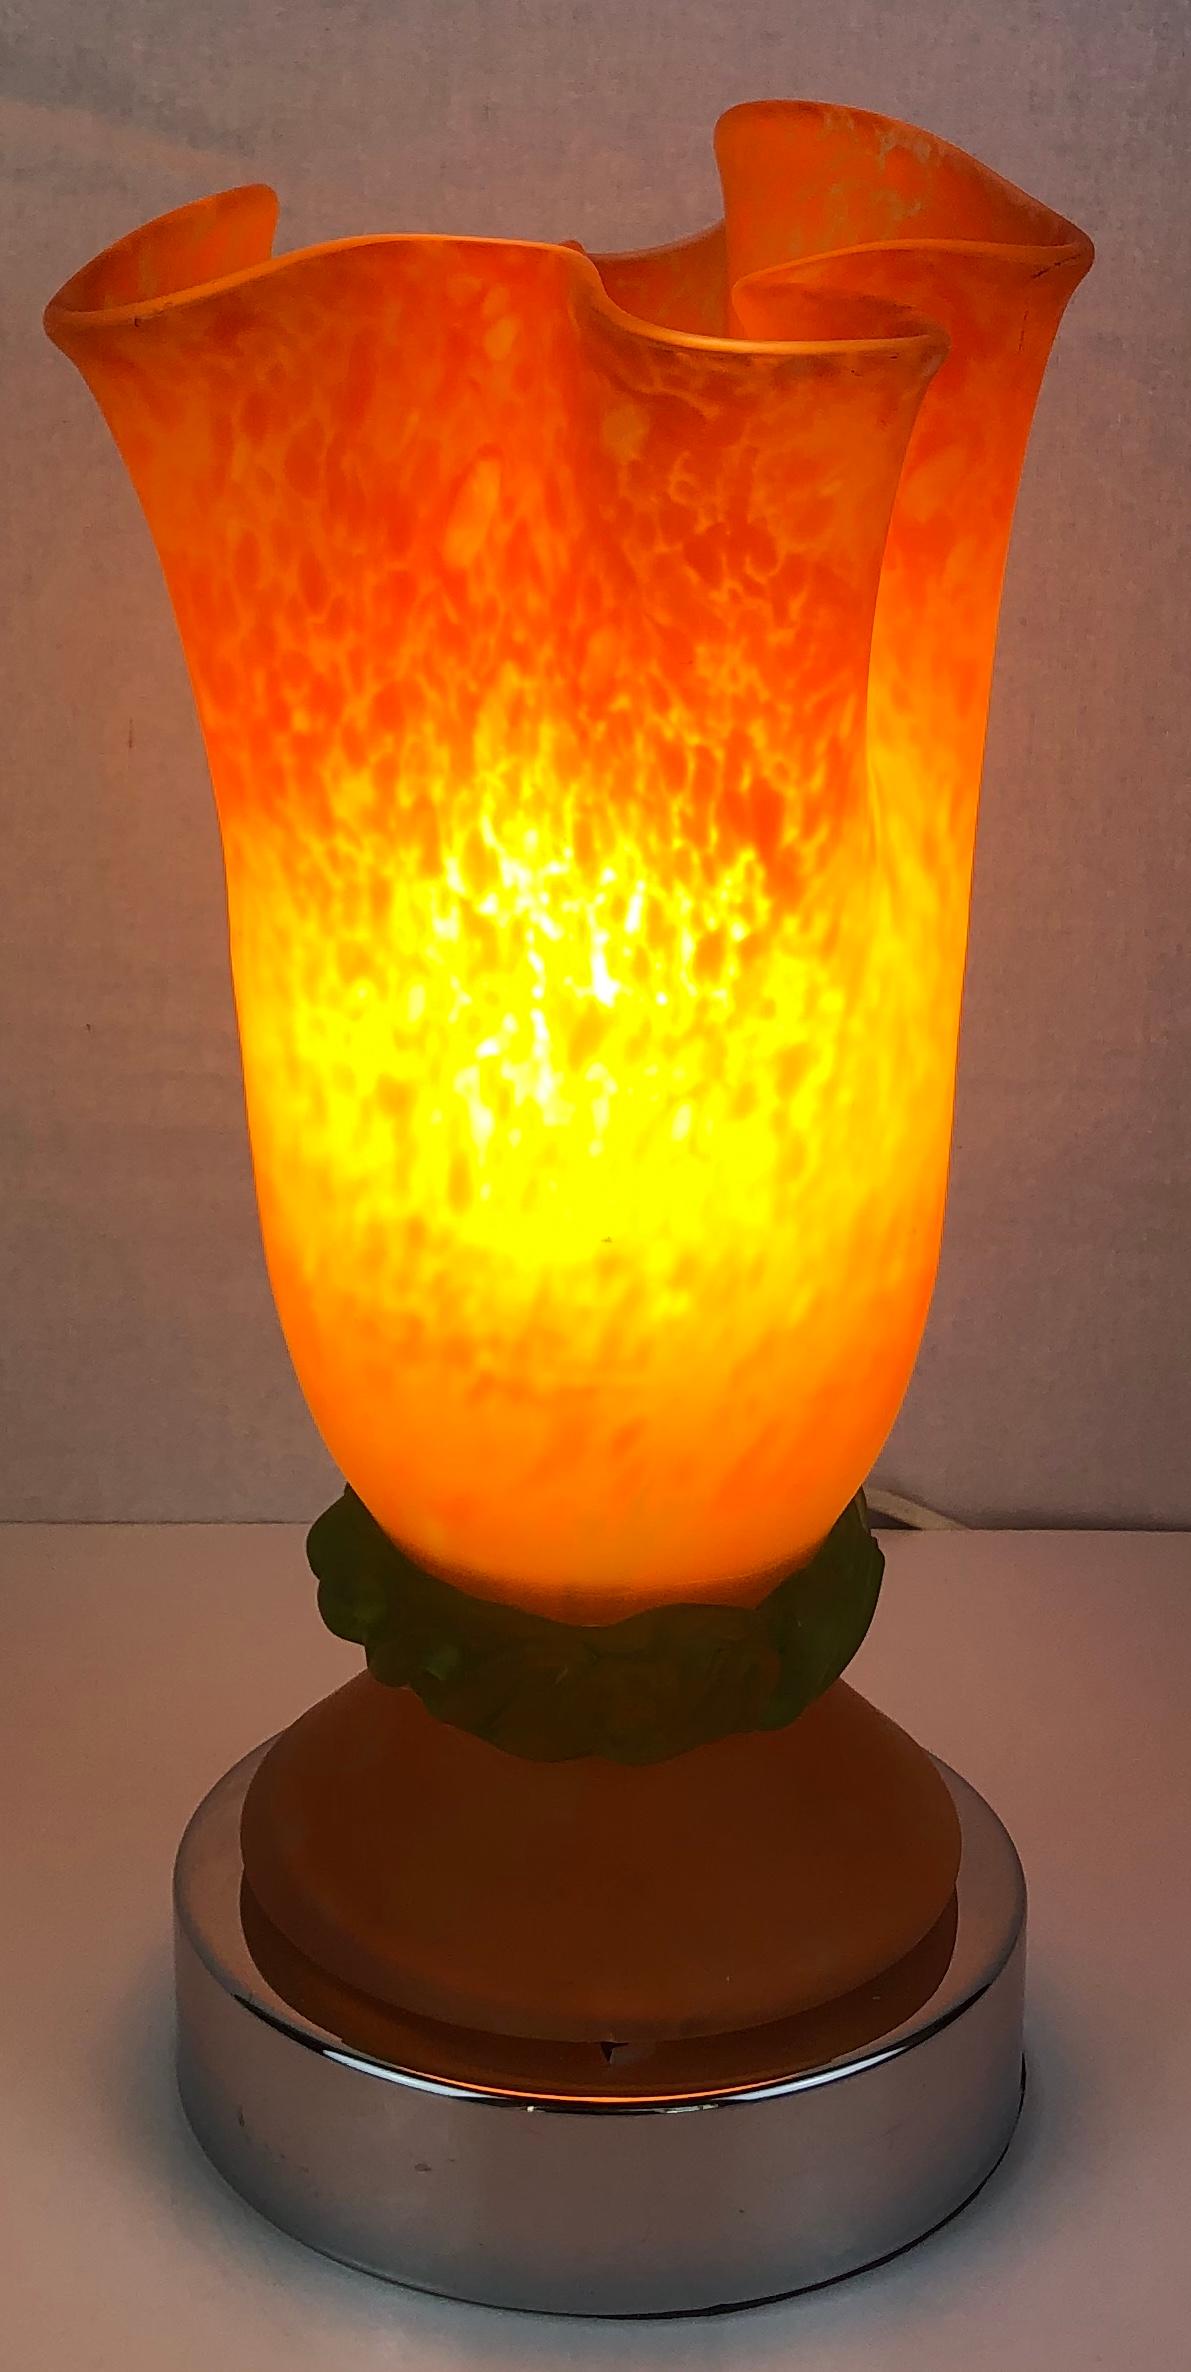 Superbe lampe de table Art Déco en chrome, fabriquée à la main, avec abat-jour en pâte de verre, France, vers 1920-1929.

La lampe a été récemment recâblée, la douille contient une ampoule E14.
Actuellement, la lampe est équipée d'une prise pour une